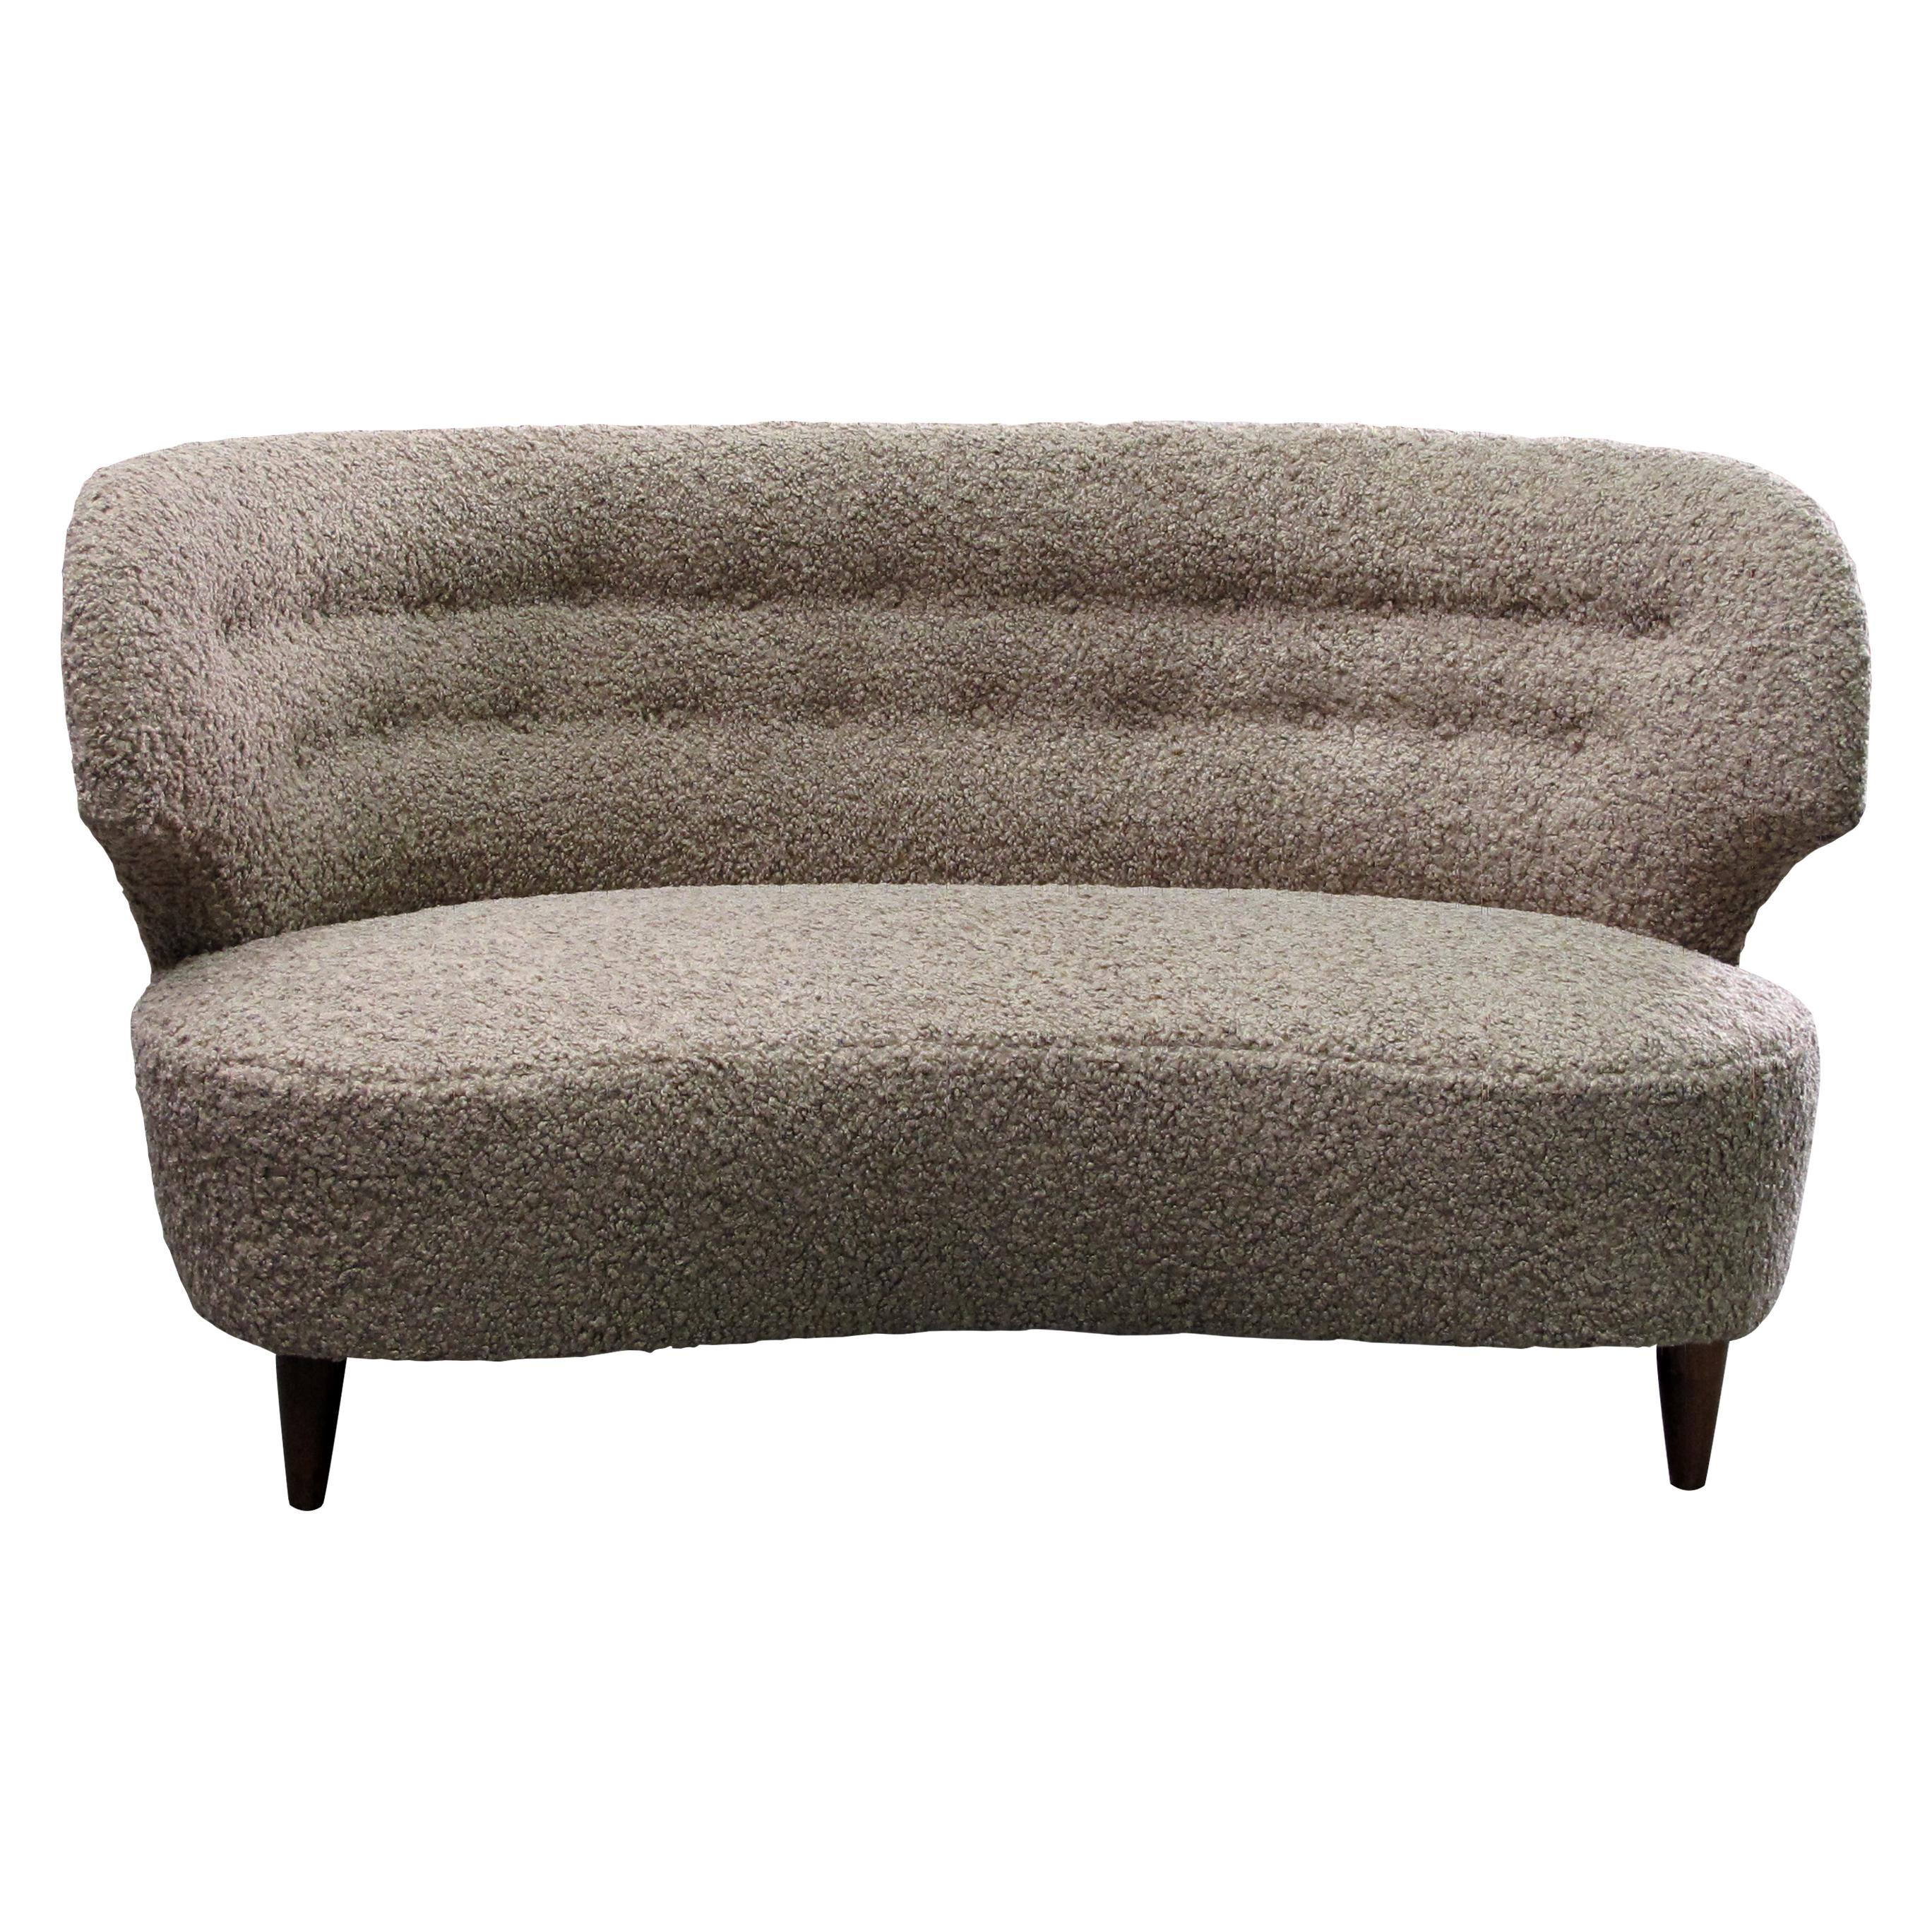 Ce grand canapé confortable est un classique du design moderne finlandais des années 1940 de Carl-Johan Boman. Il présente un design simple et élégant, avec des lignes épurées et un dossier incurvé. Le cadre et les pieds en chêne sont robustes et de